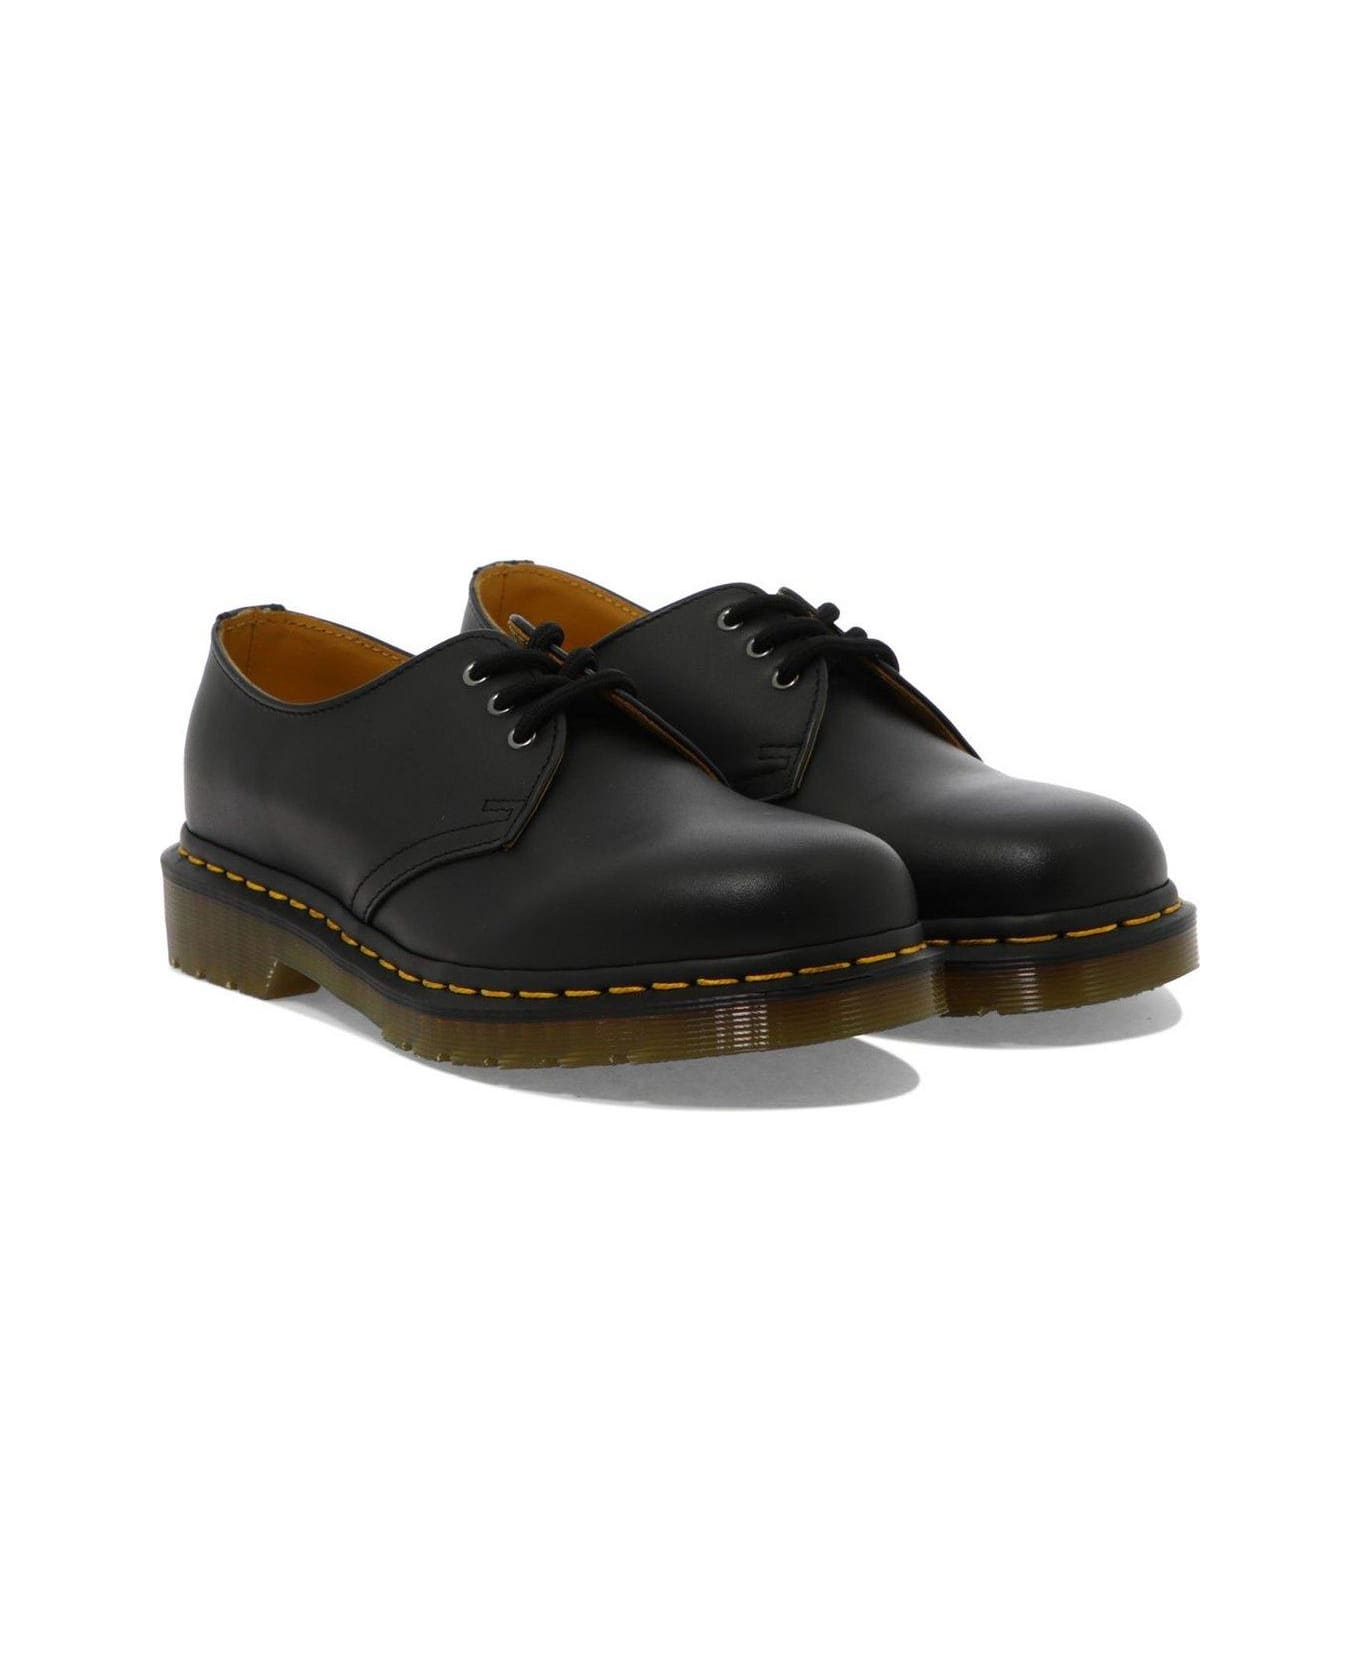 Dr. Martens 1461 Lace Up Shoes - Black